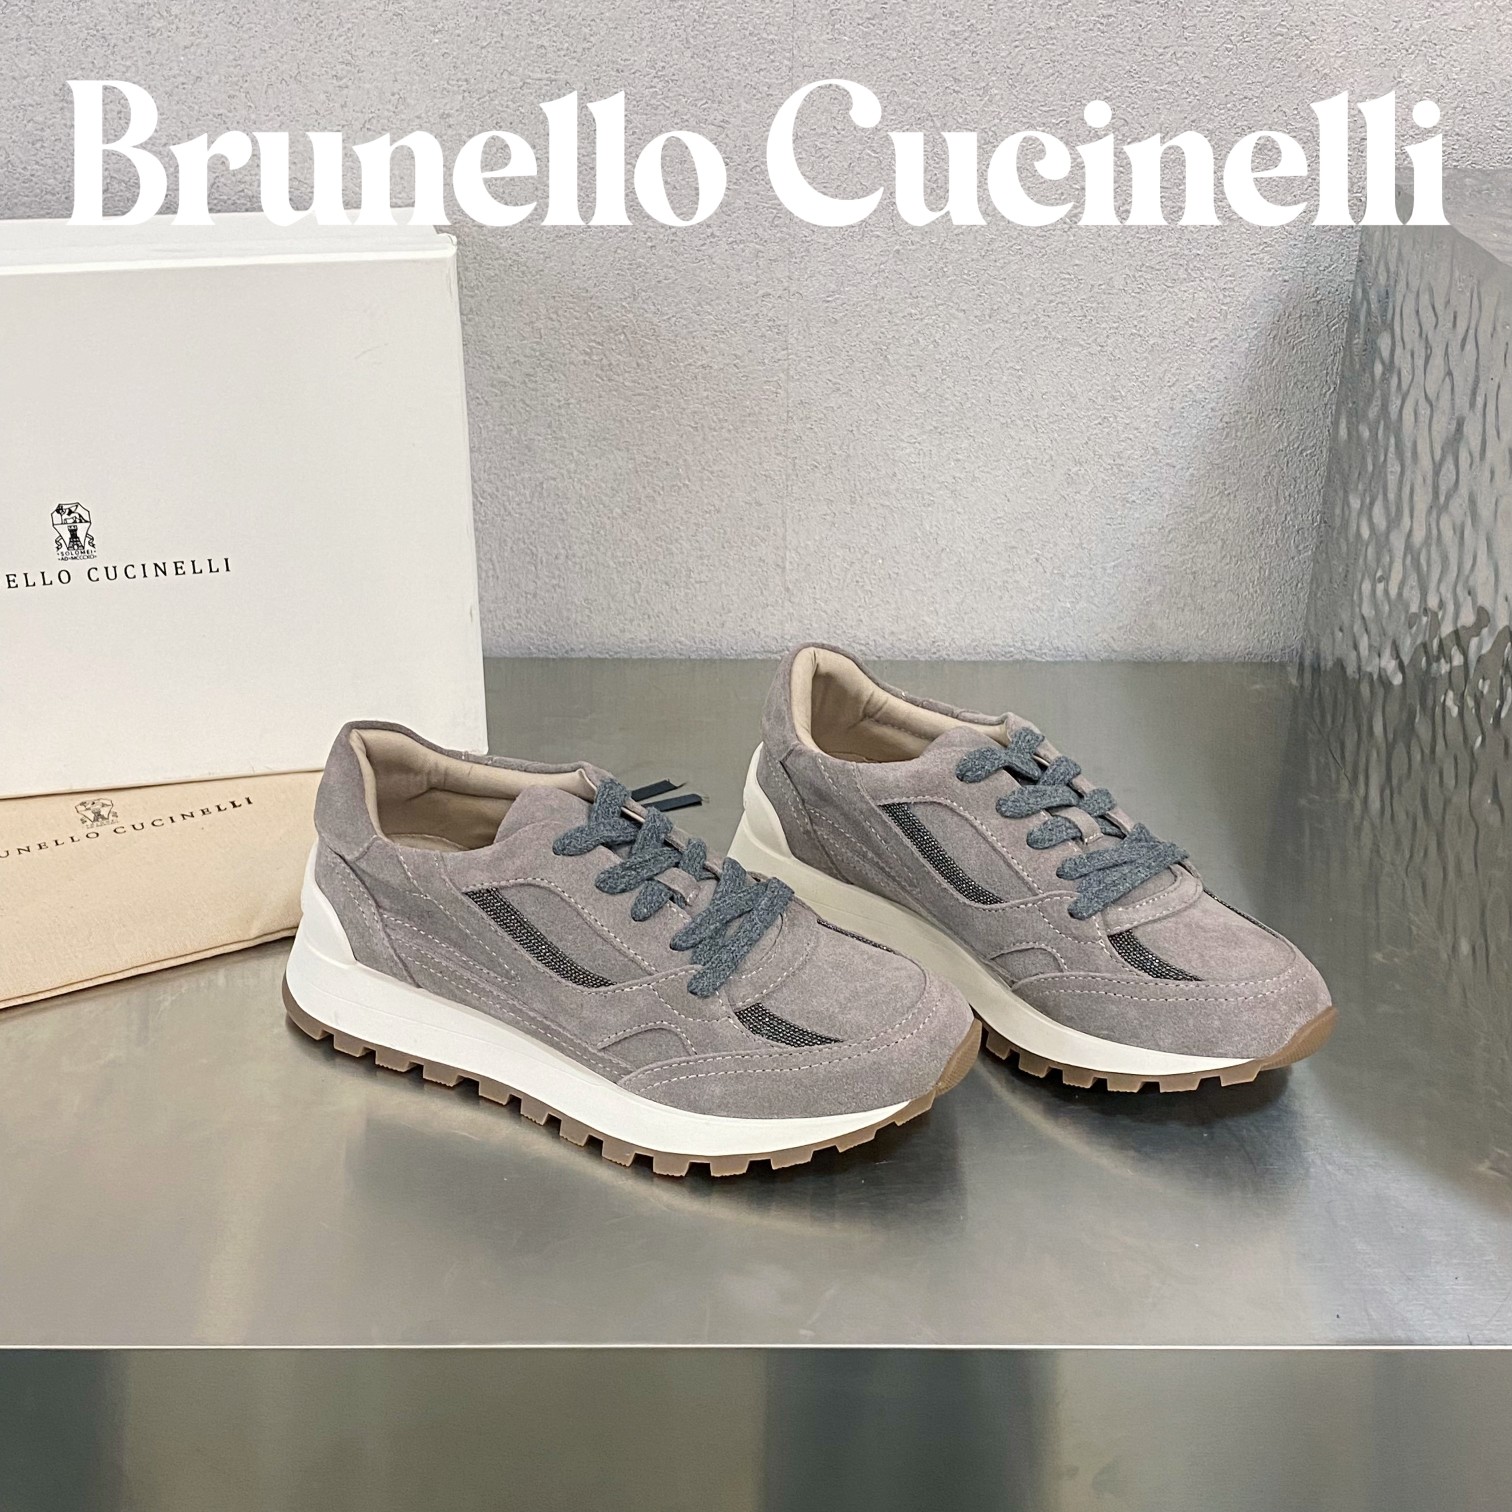 最高版本zbdbs                        Brunello Cucinelli                       布鲁内罗·库奇内利                                年新款女士镶珠系带低帮运动鞋珍贵细节与精美对比彰显着这些